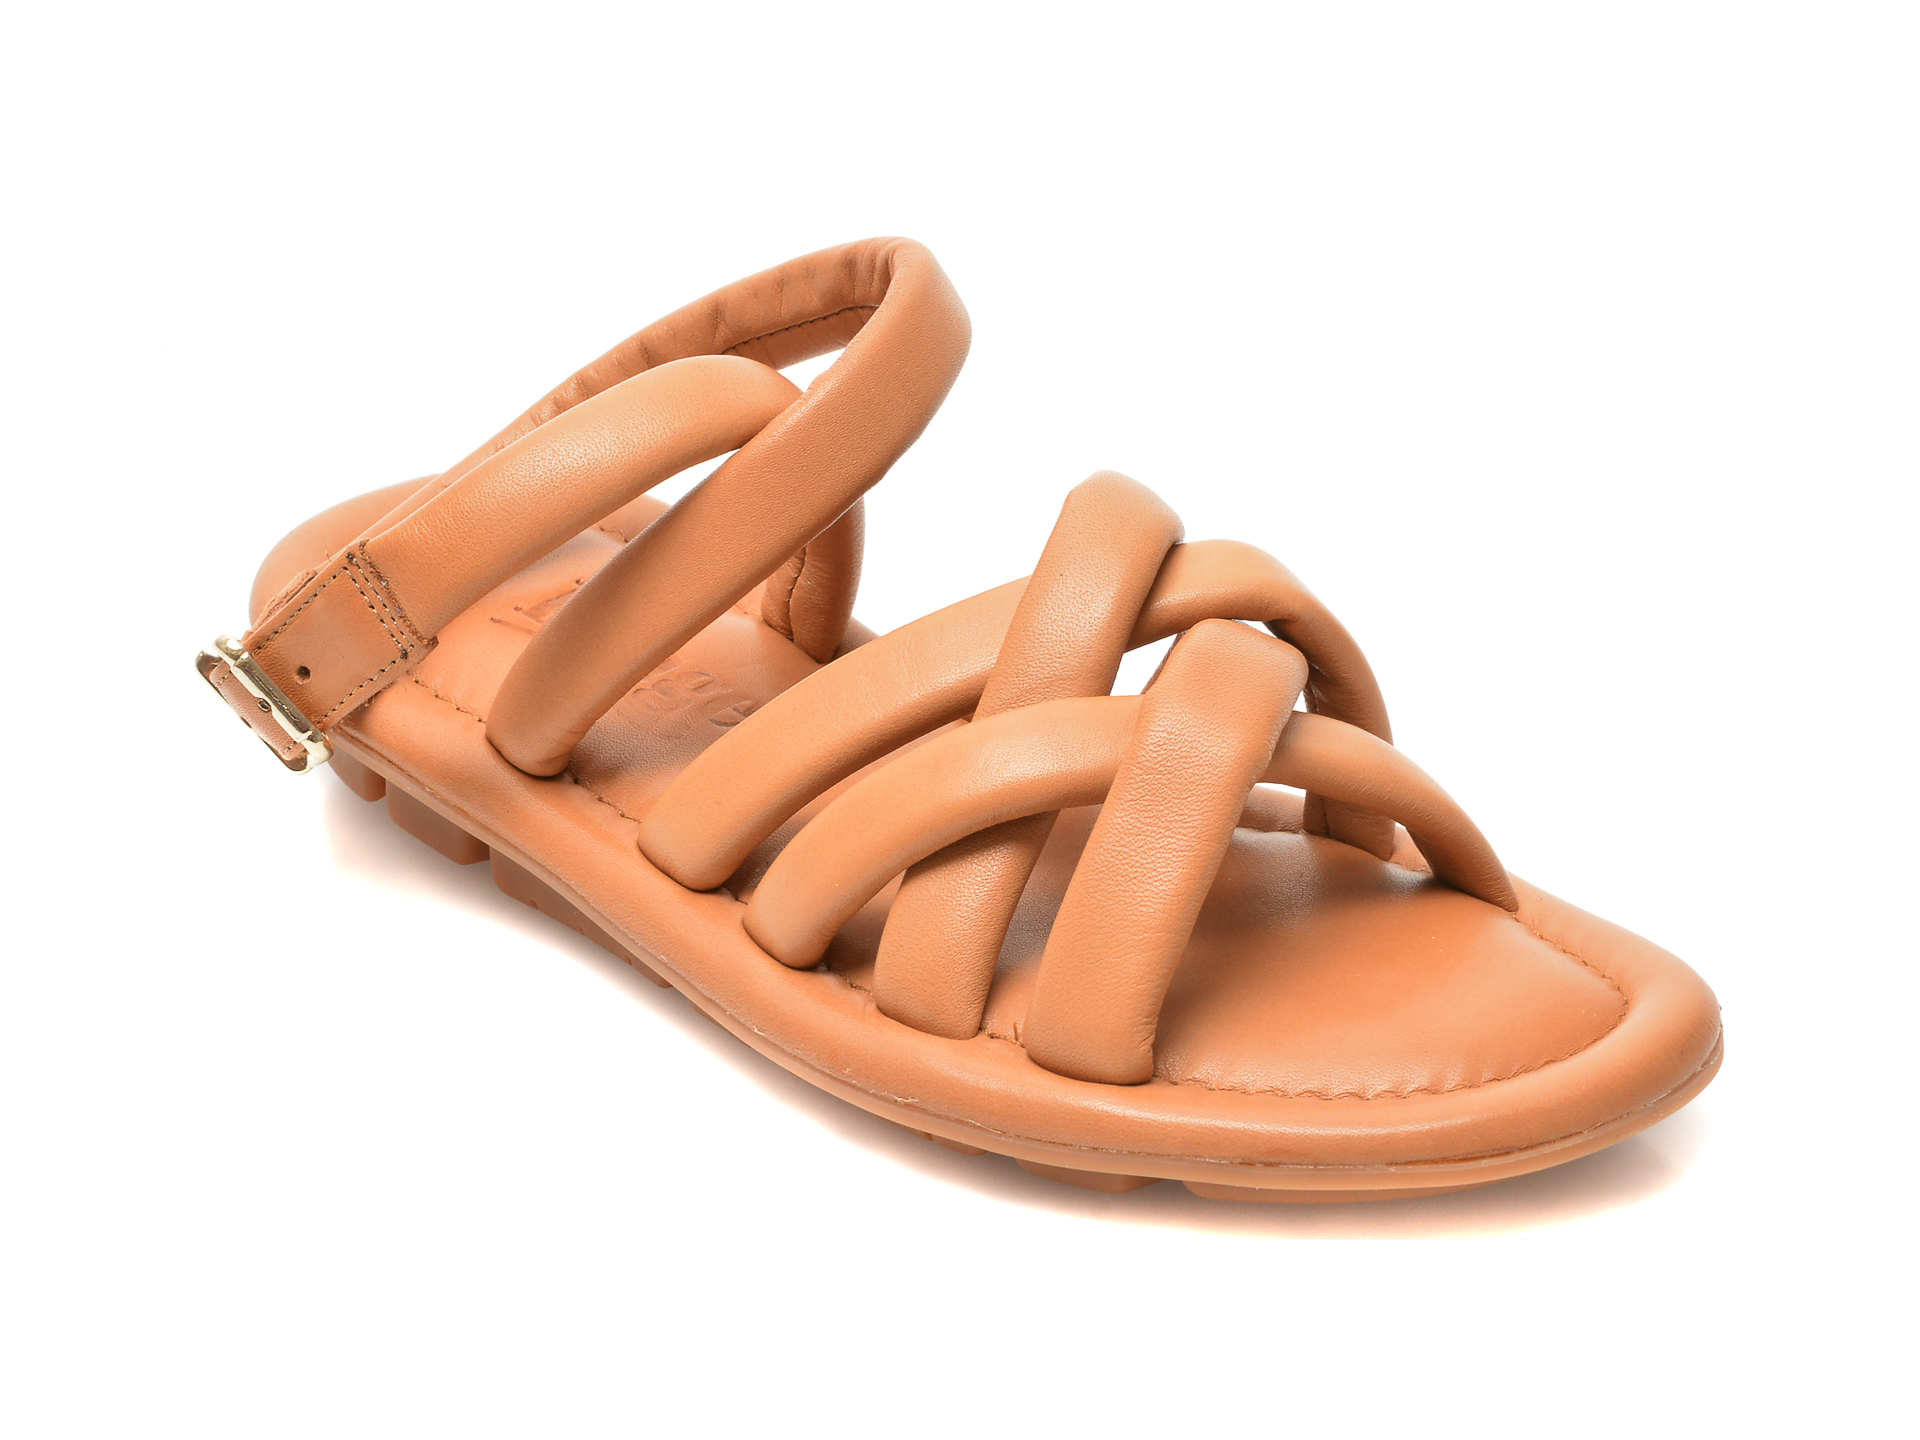 Sandale IMAGE maro, 240, din piele naturala 2022 ❤️ Pret Super tezyo.ro imagine noua 2022